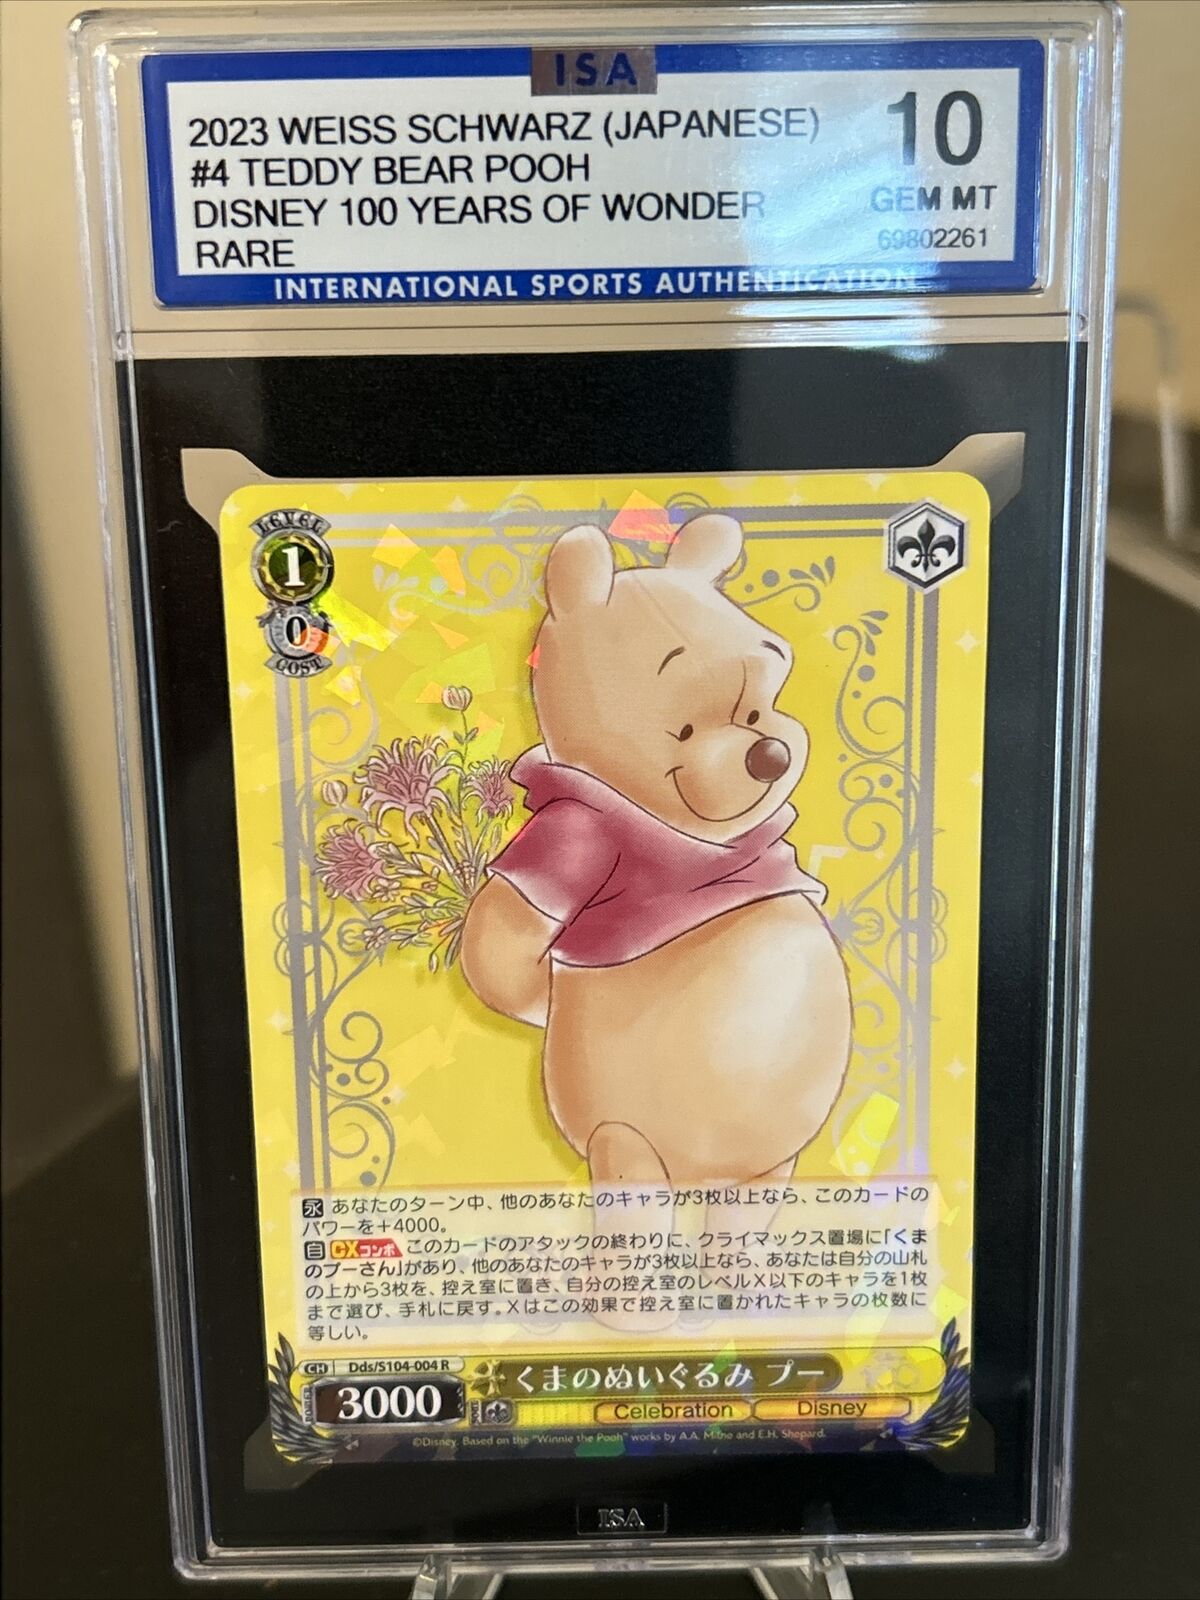 2023 Weiss Schwarz Japanese Stuffed Pooh Bear #4 Rare PSA 10 Disney 100